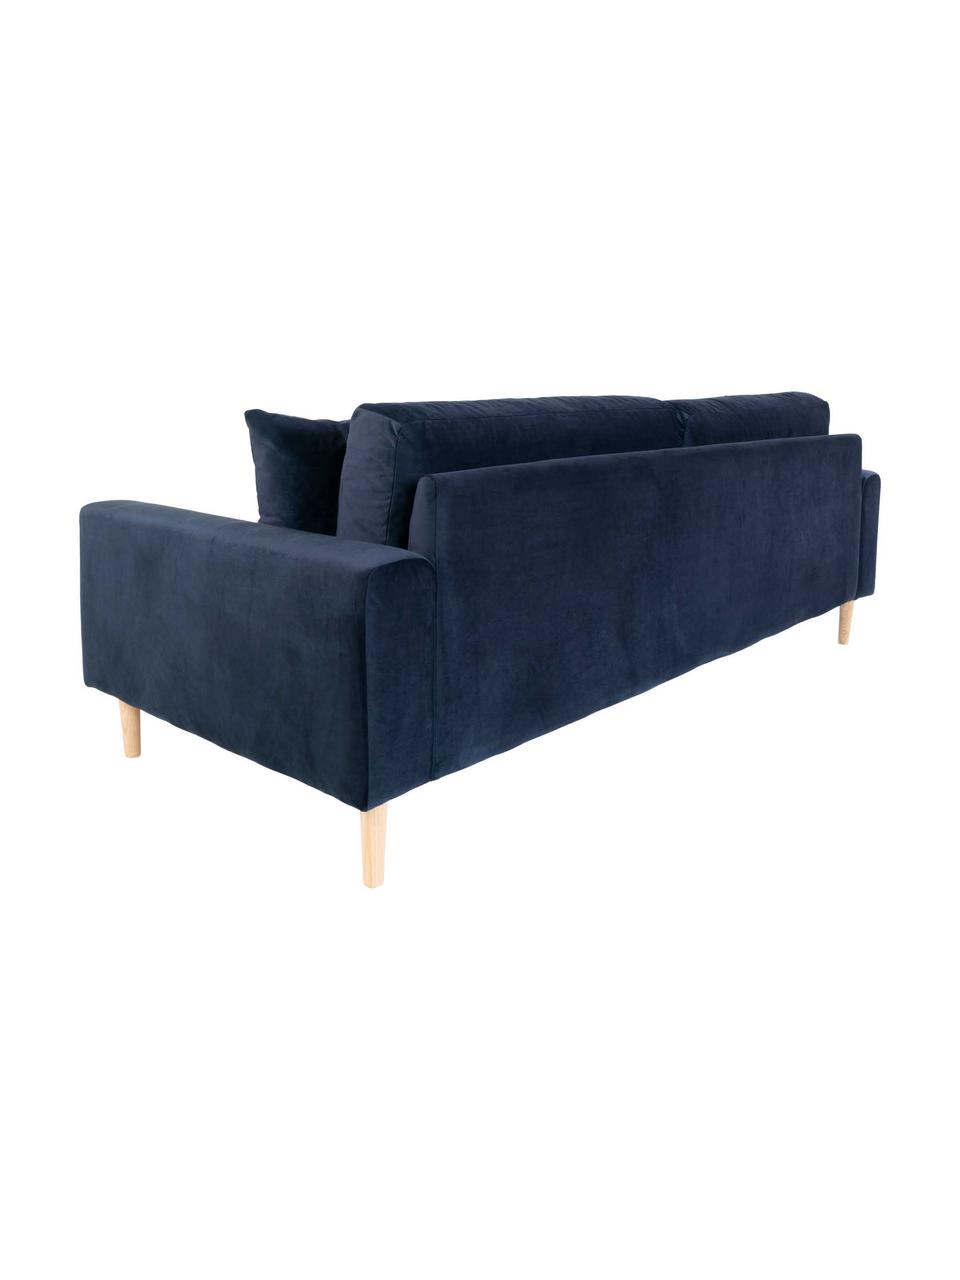 Sofa z aksamitu  Lido (3-osobowa), Tapicerka: aksamit poliestrowy 30 00, Nogi: drewno jodłowe, Ciemny niebieski, S 210 x G 93 cm